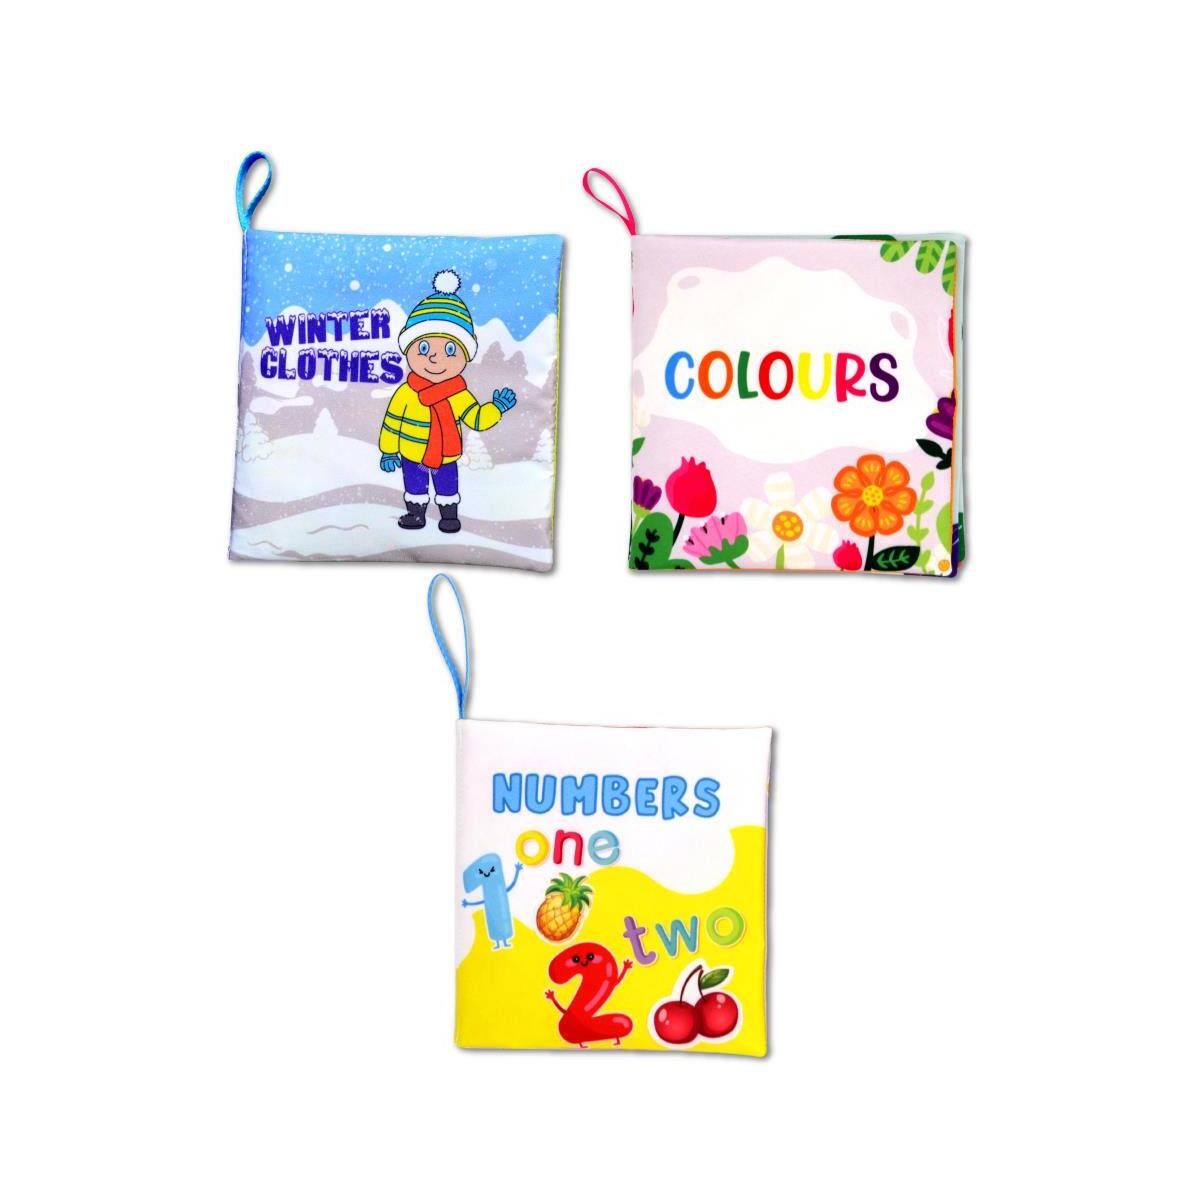 3 Kitap Tox İngilizce Kışlık Giysiler , Renkler Ve Rakamlar Kumaş Sessiz Kitap E124 E129 E128  - Bez Kitap